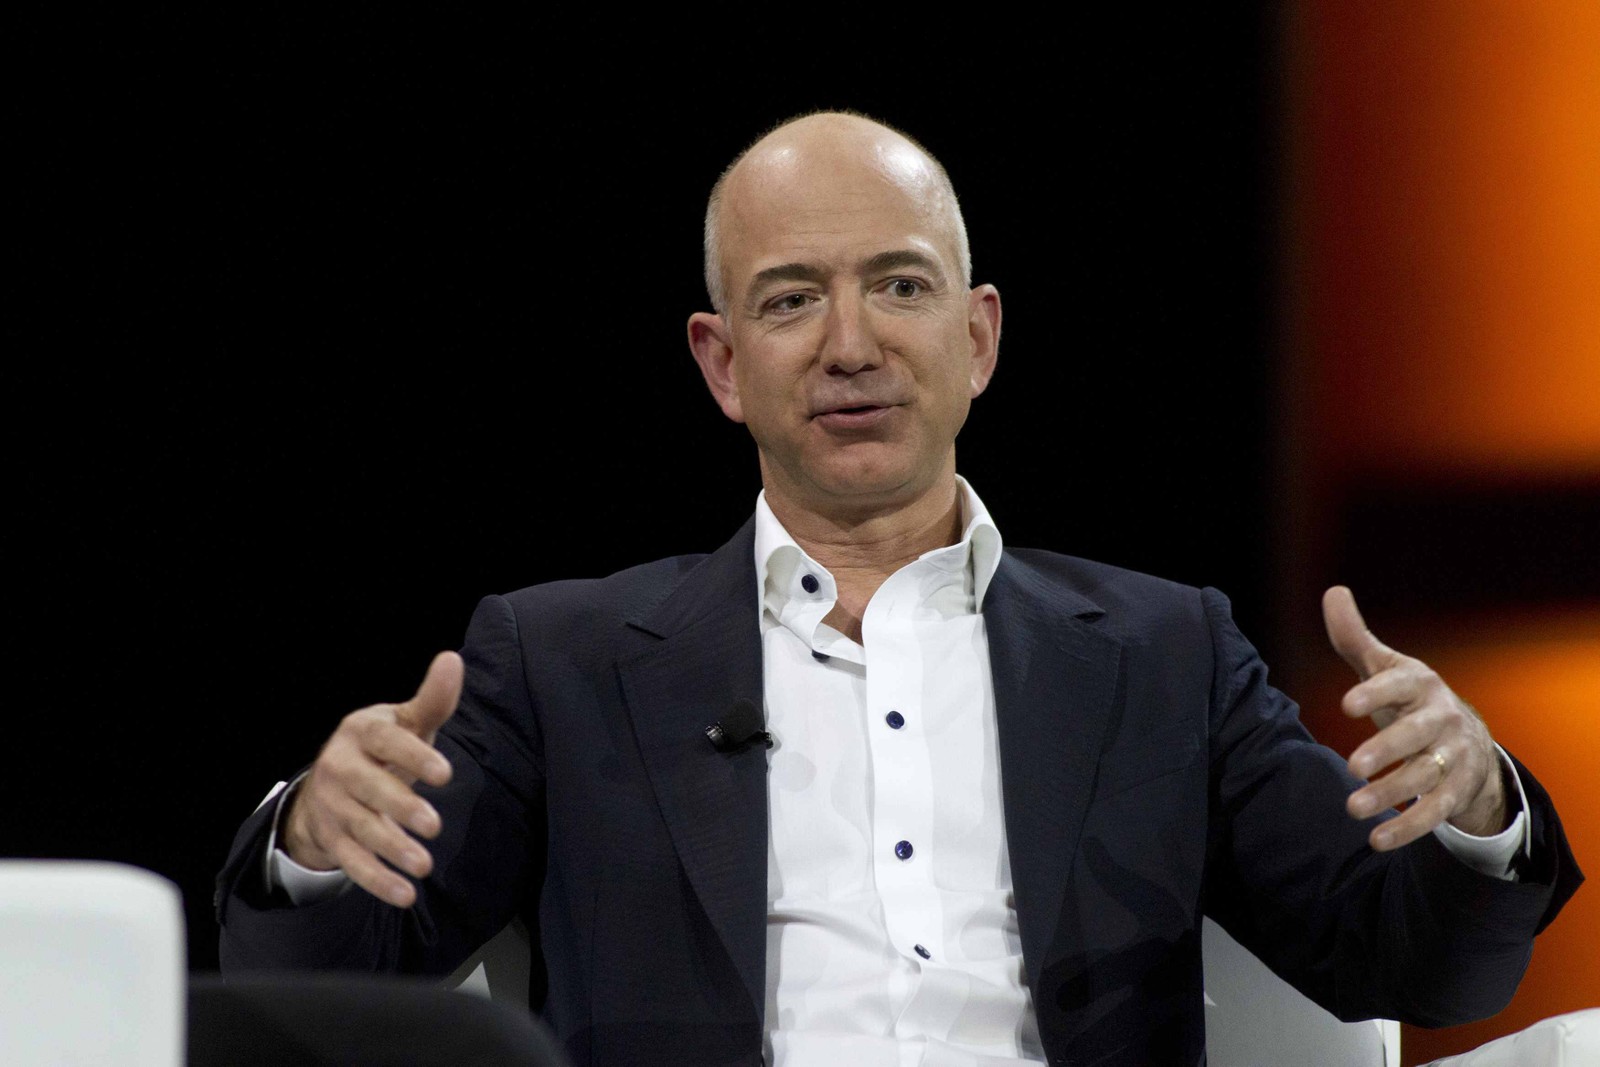 Jeff Bezos, fundador da Amazon - Patrimônio atual avaliado em US$188 bilhões. No futuro, em 2030, aos 65 anos, deve chegar ao trilhão de dólaresRichard Brian